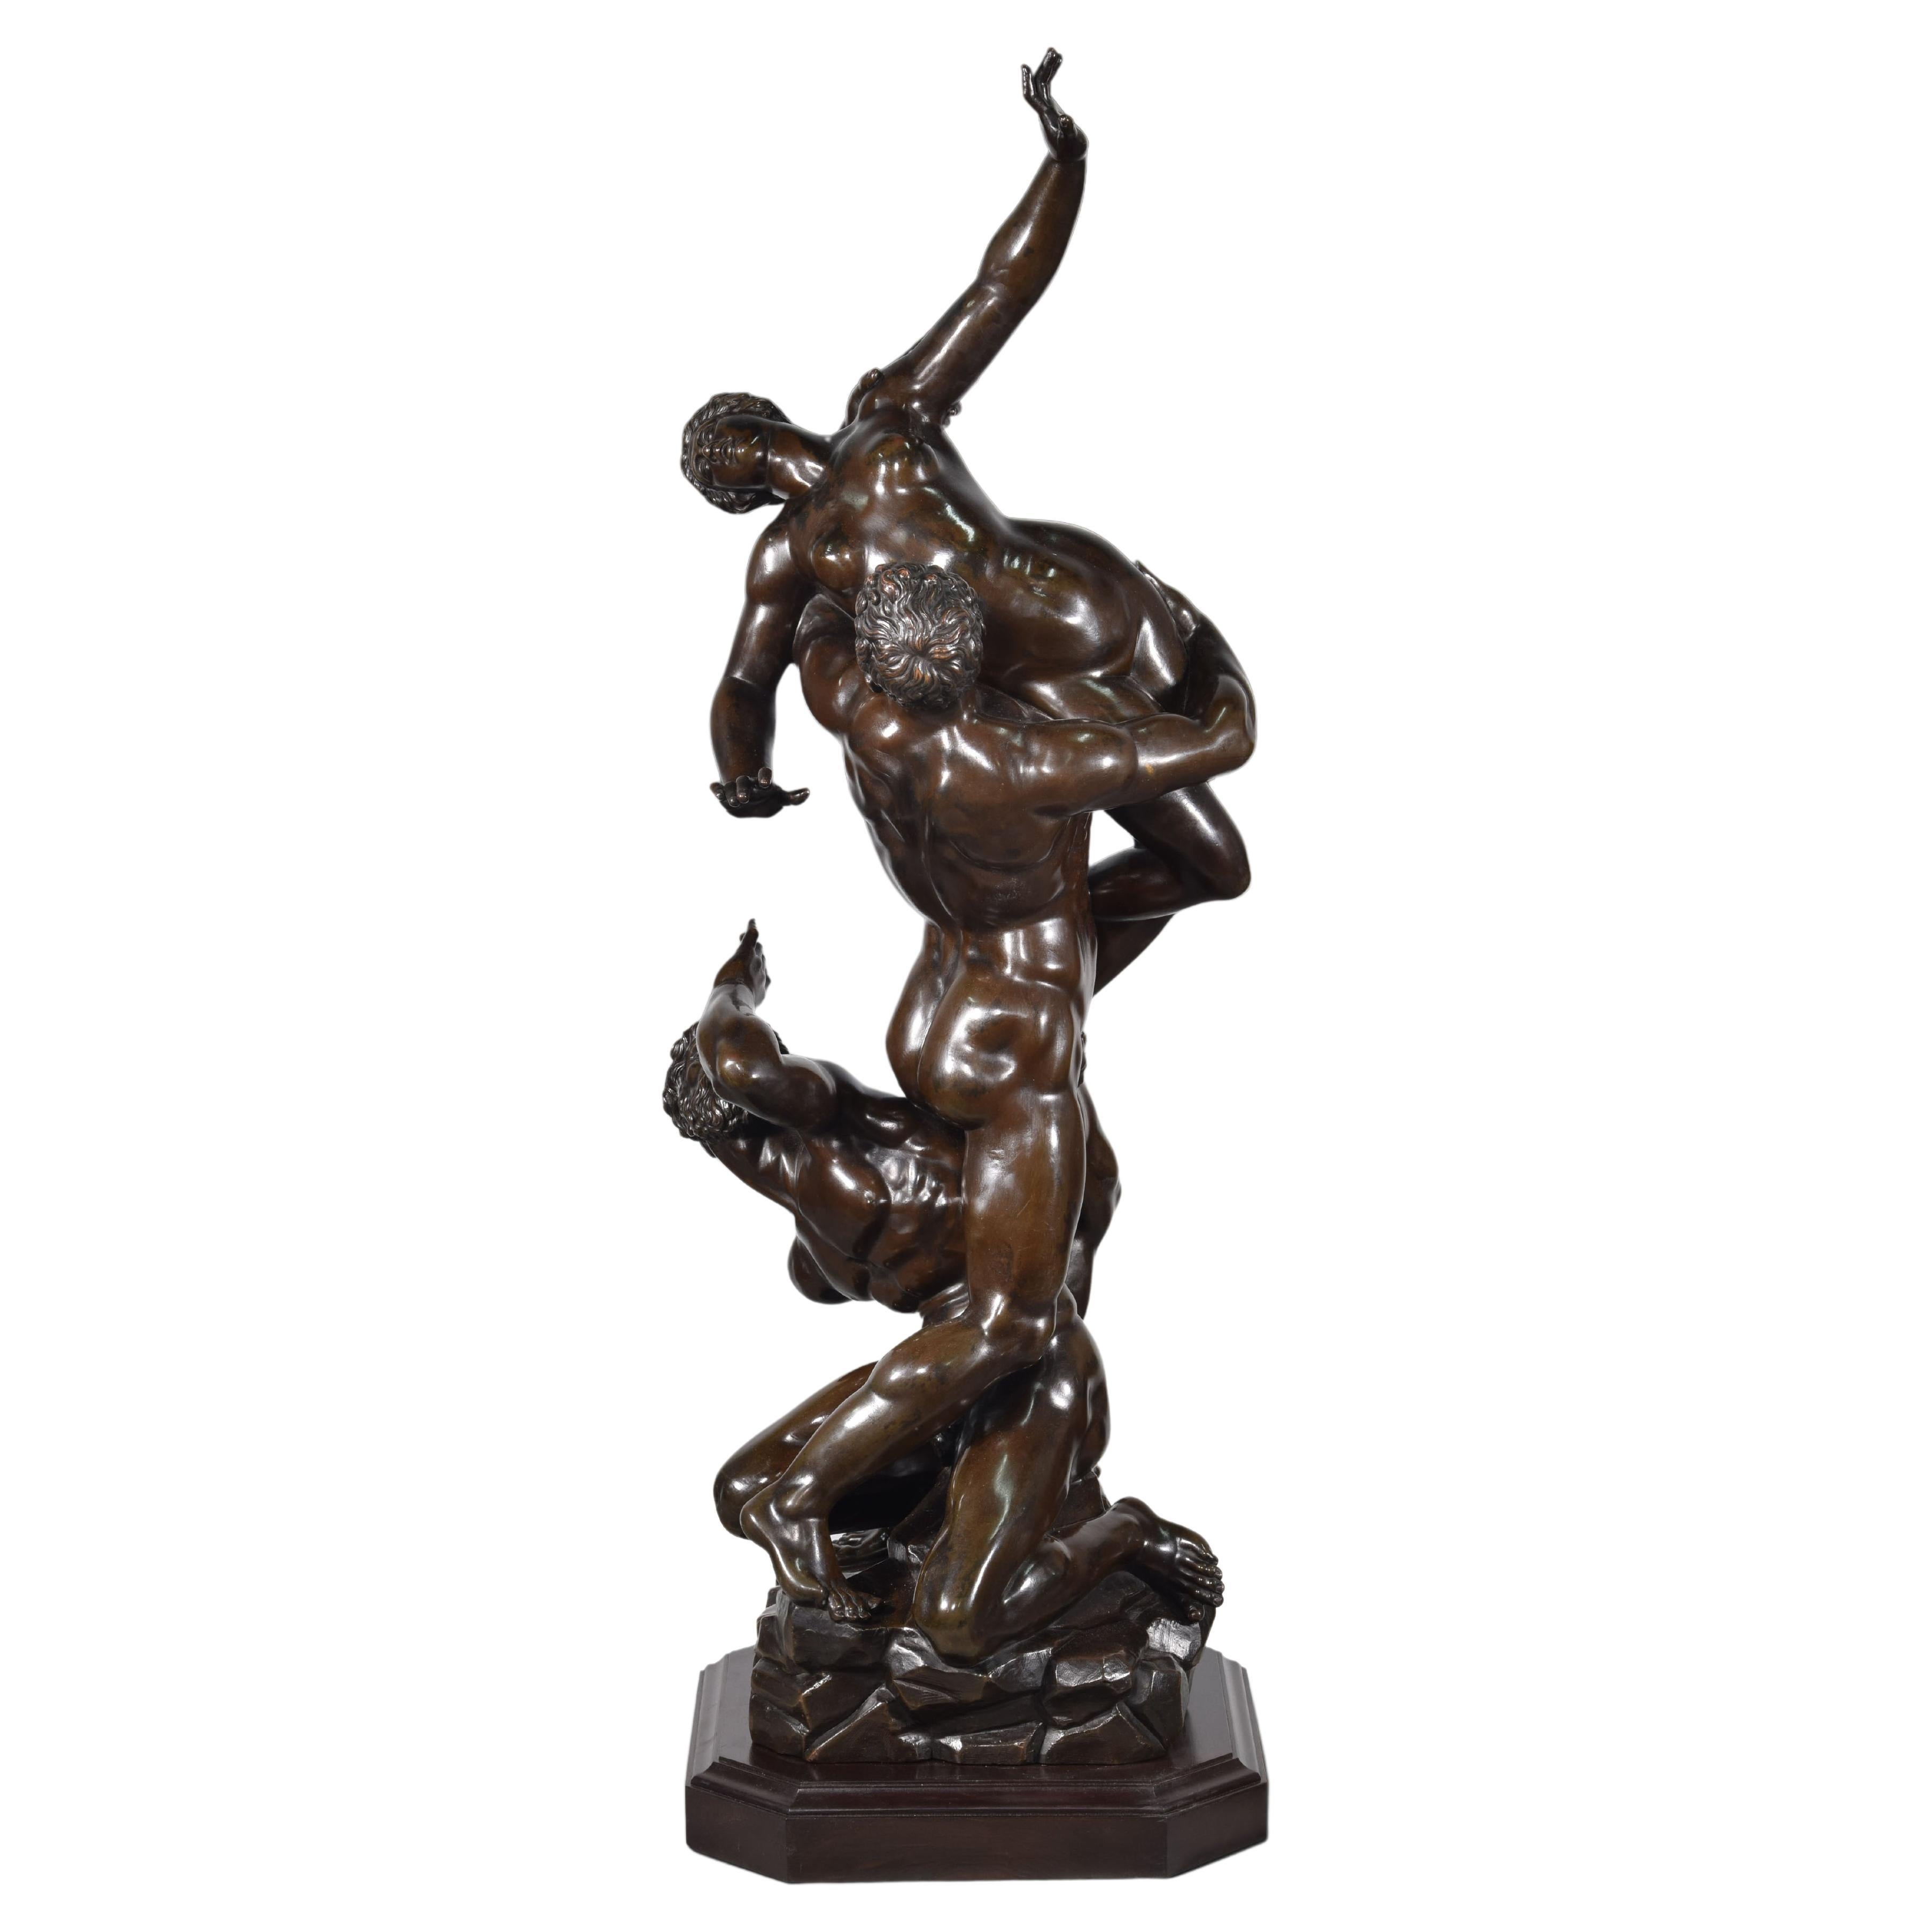 Enlèvement de la femme Sabine, bronze, 19e siècle, d'après Giambologna